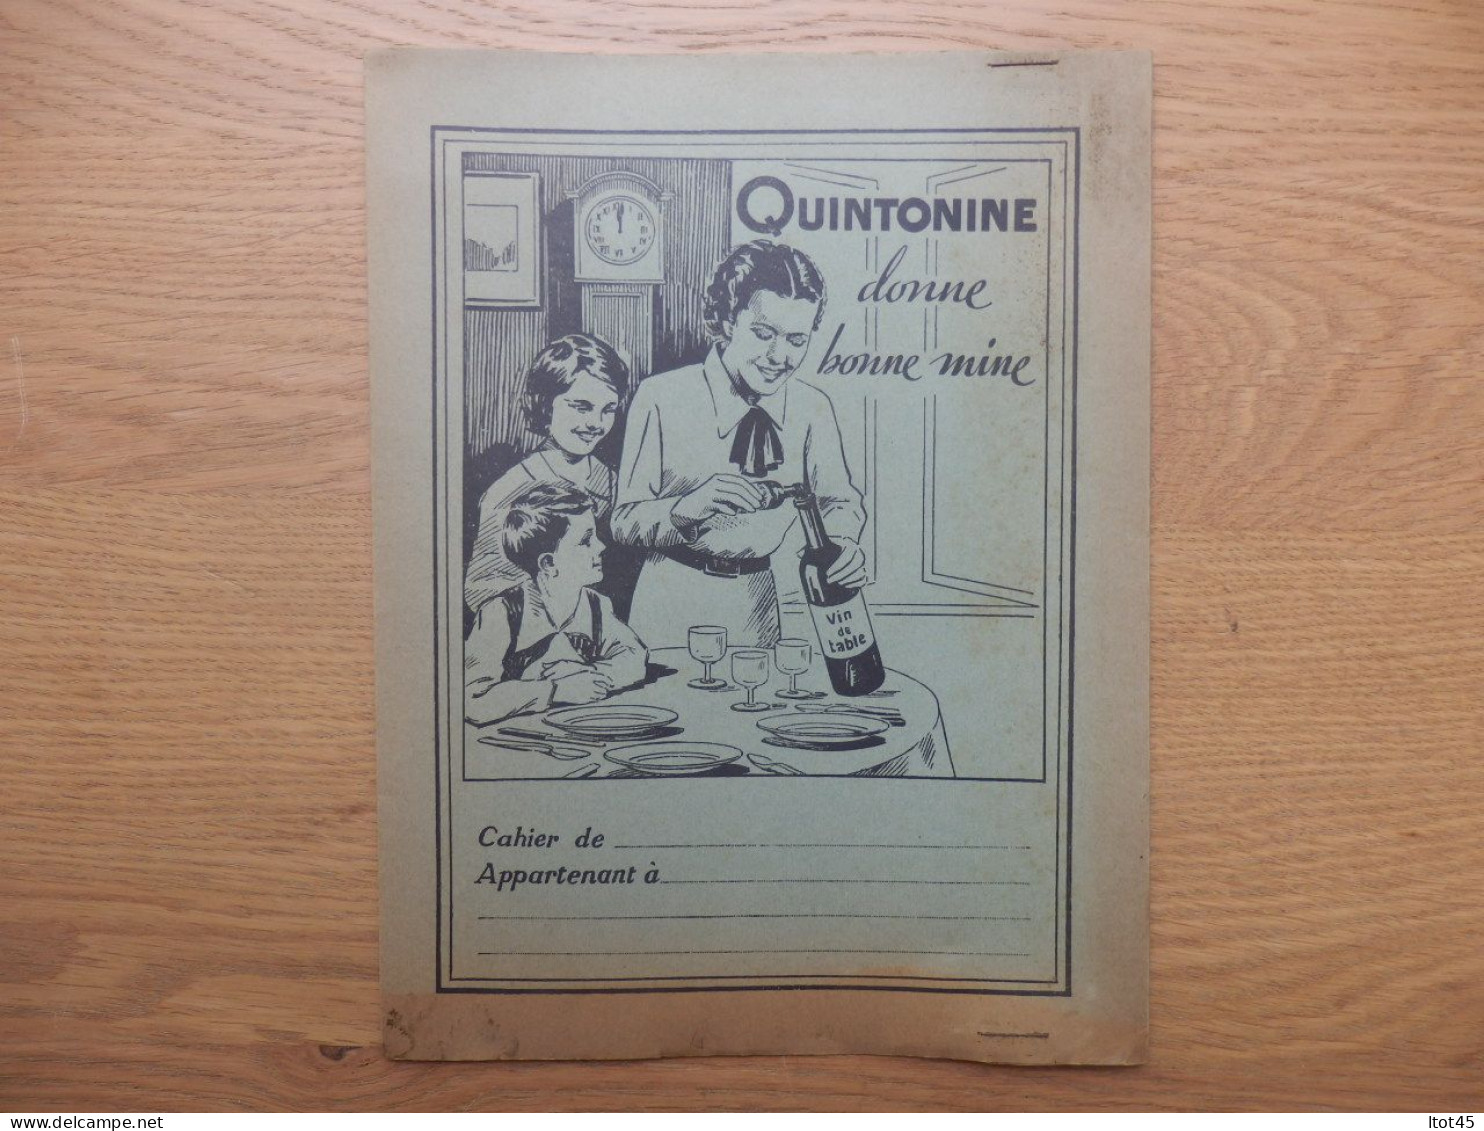 PROTEGE-CAHIER QUINTONINE DONNE BONNE MINE - Book Covers